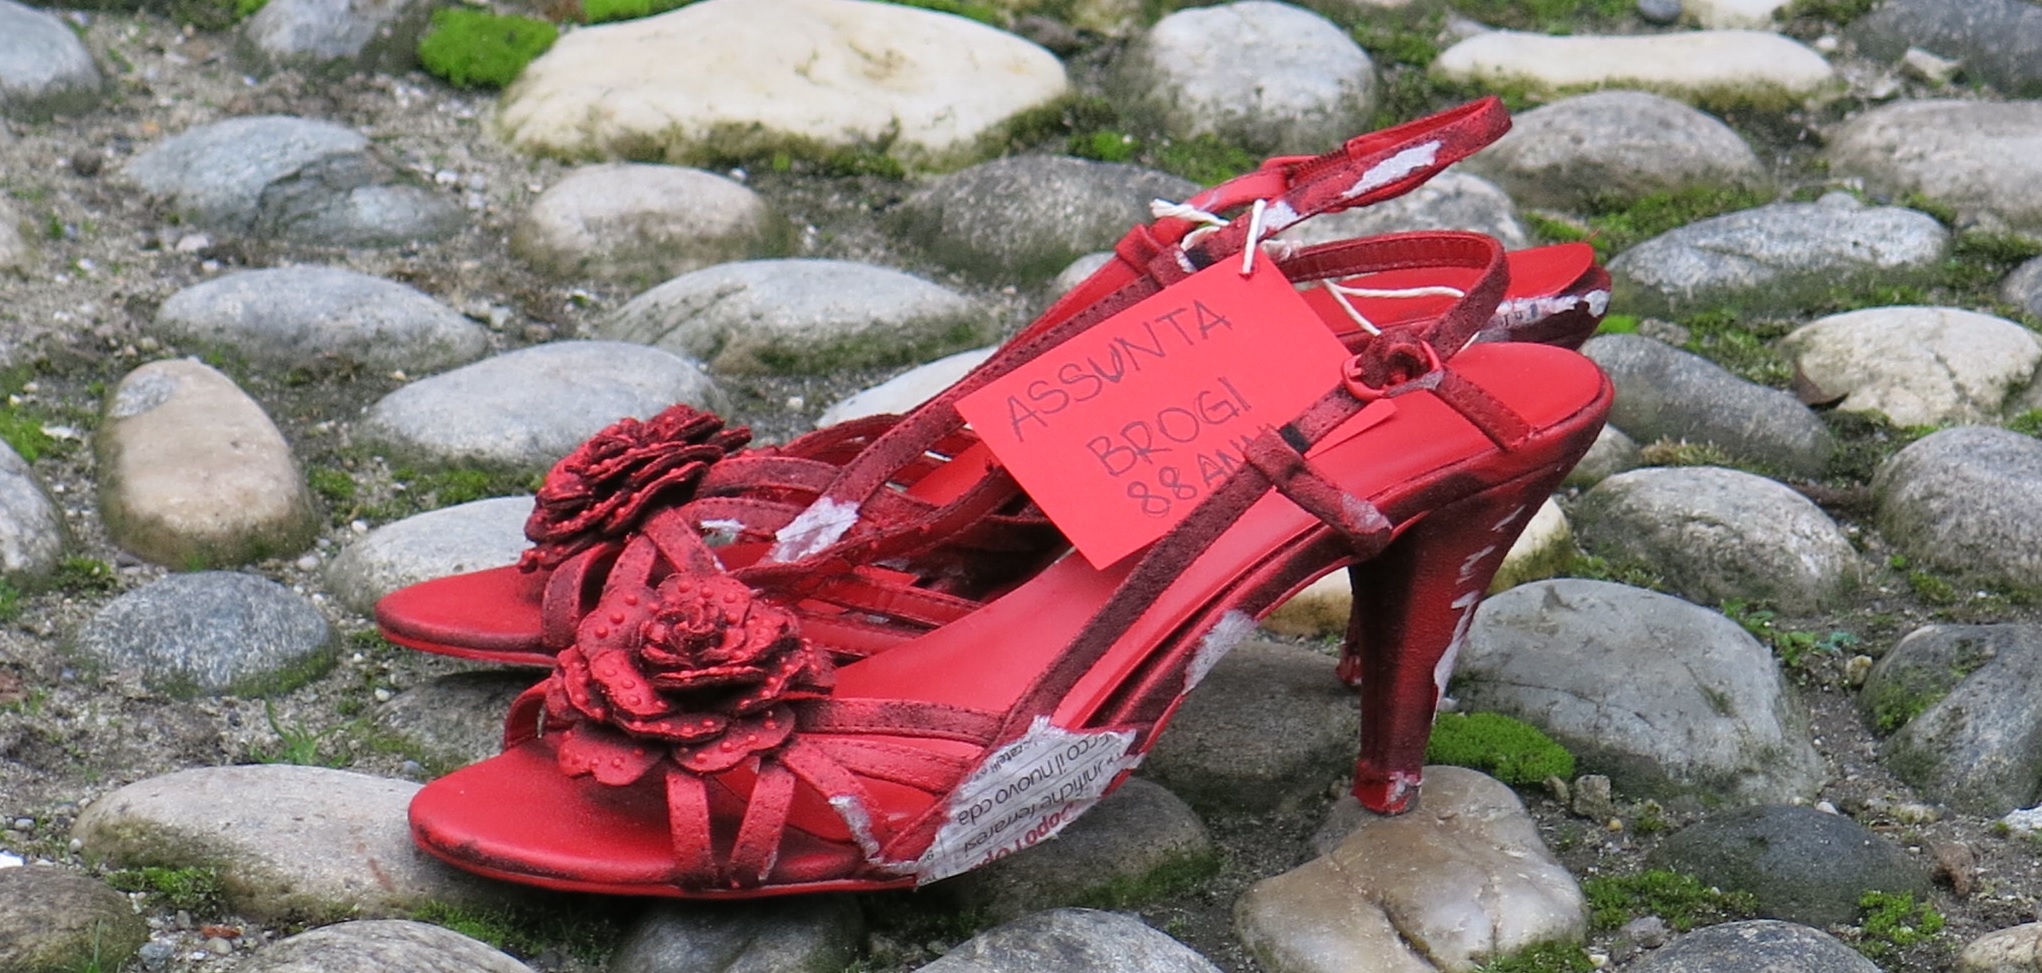 Un paio di scarpe rosse in occasione della Giornata internazionale per l'eliminazione della violenza contro le donne